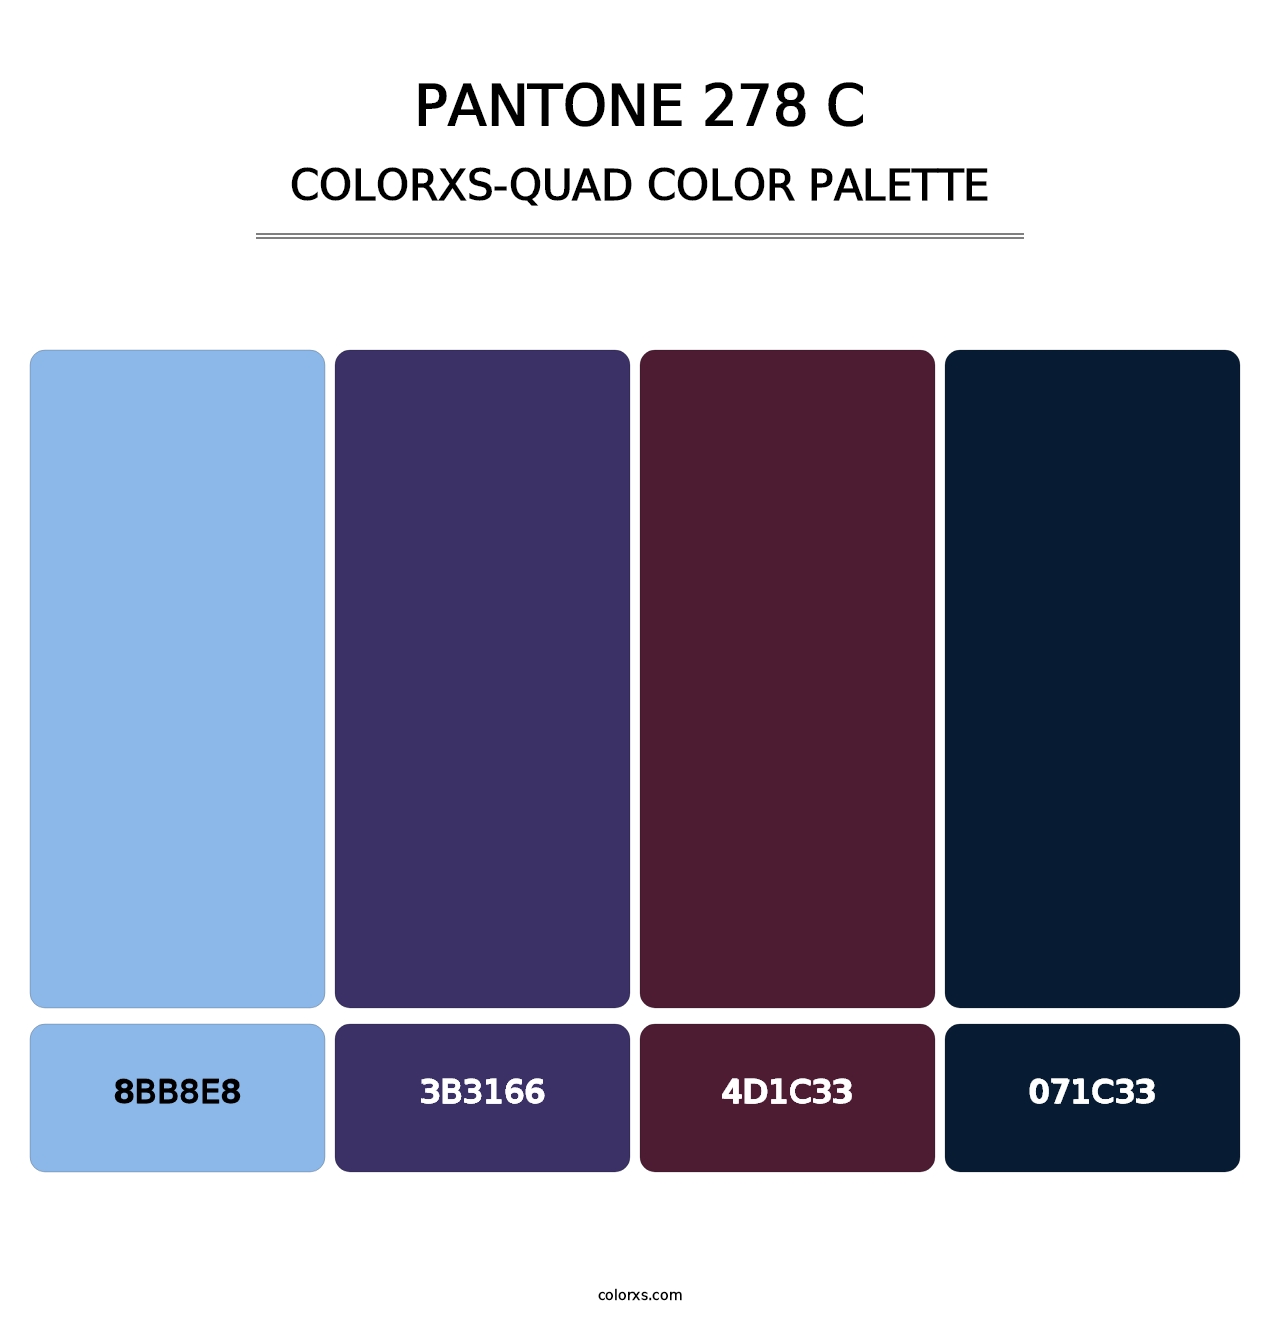 PANTONE 278 C - Colorxs Quad Palette